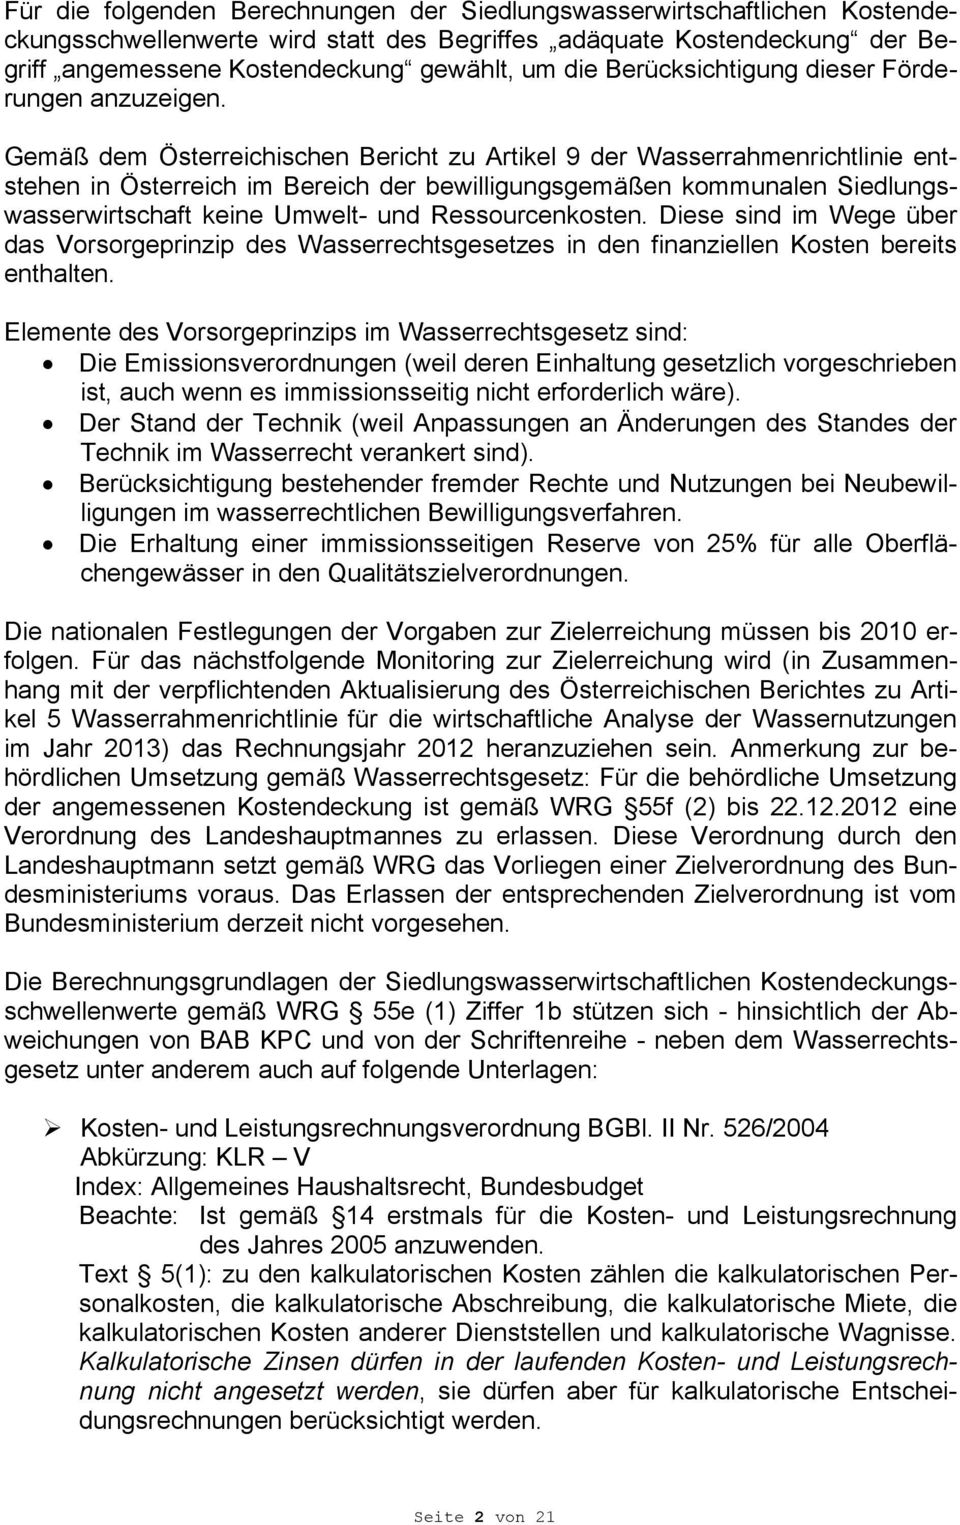 Gemäß dem Österreichischen Bericht zu Artikel 9 der Wasserrahmenrichtlinie entstehen in Österreich im Bereich der bewilligungsgemäßen kommunalen Siedlungswasserwirtschaft keine Umwelt- und